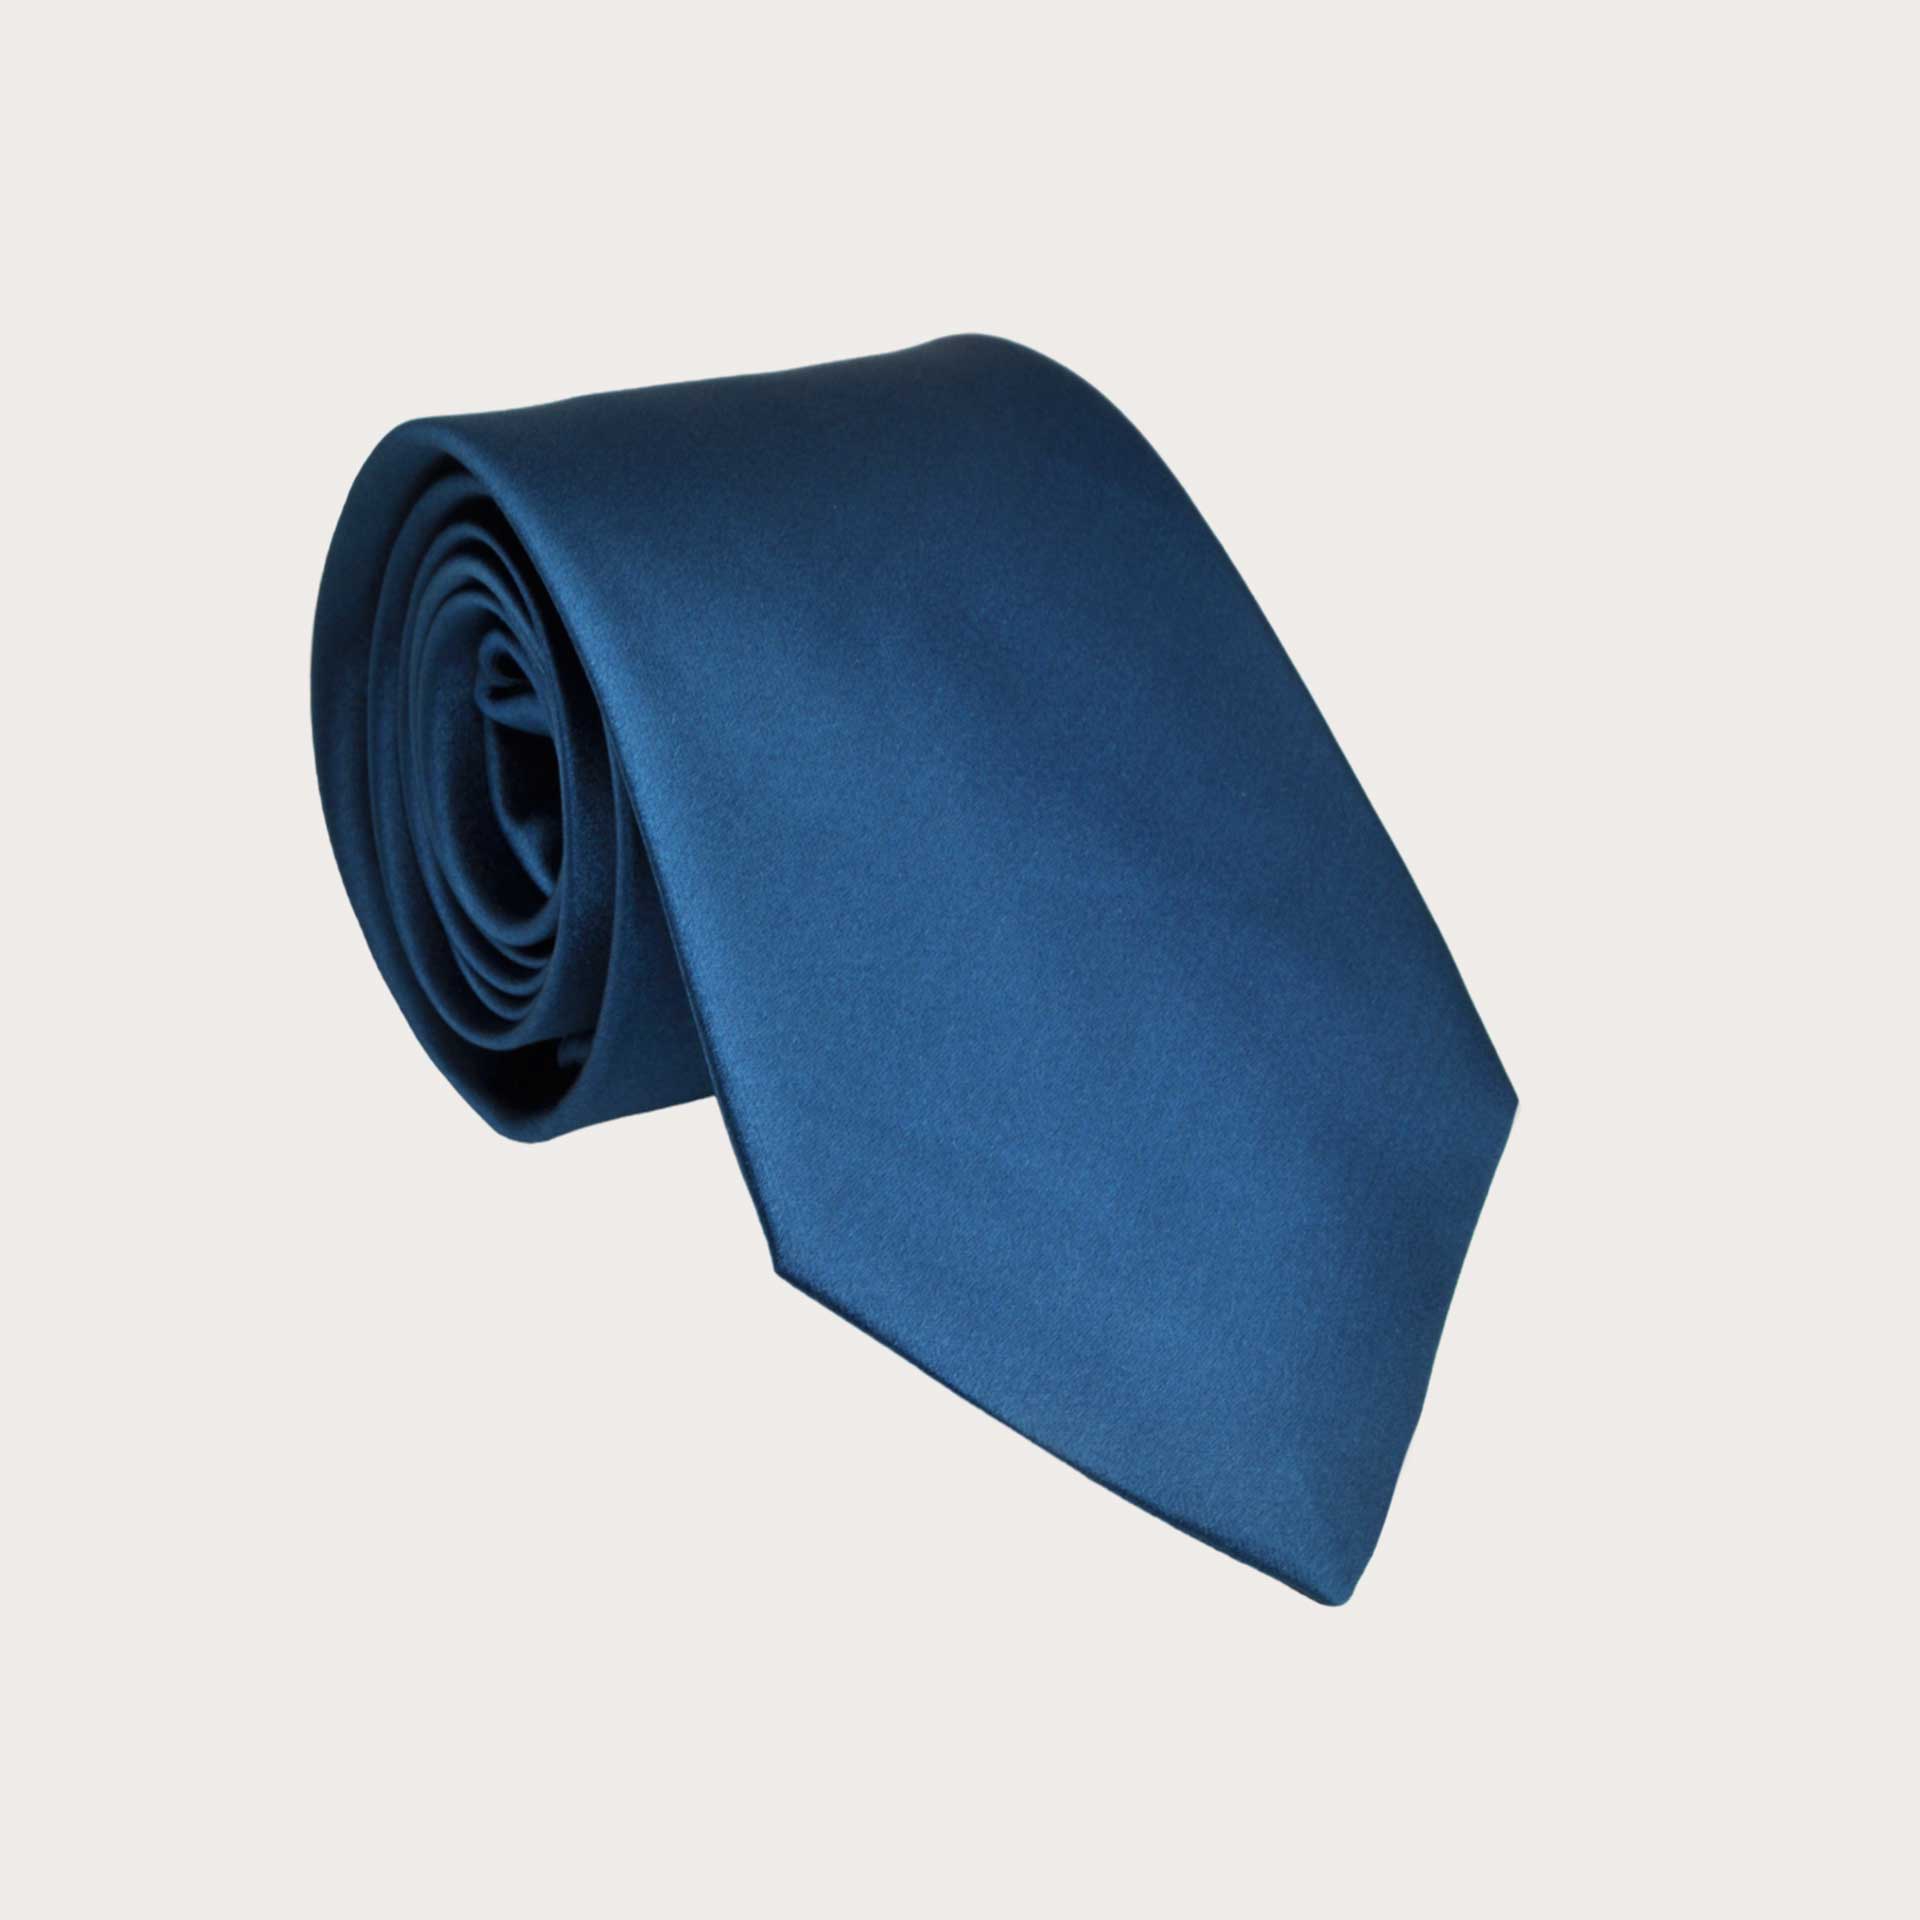 BRUCLE Classic necktie in blue silk satin